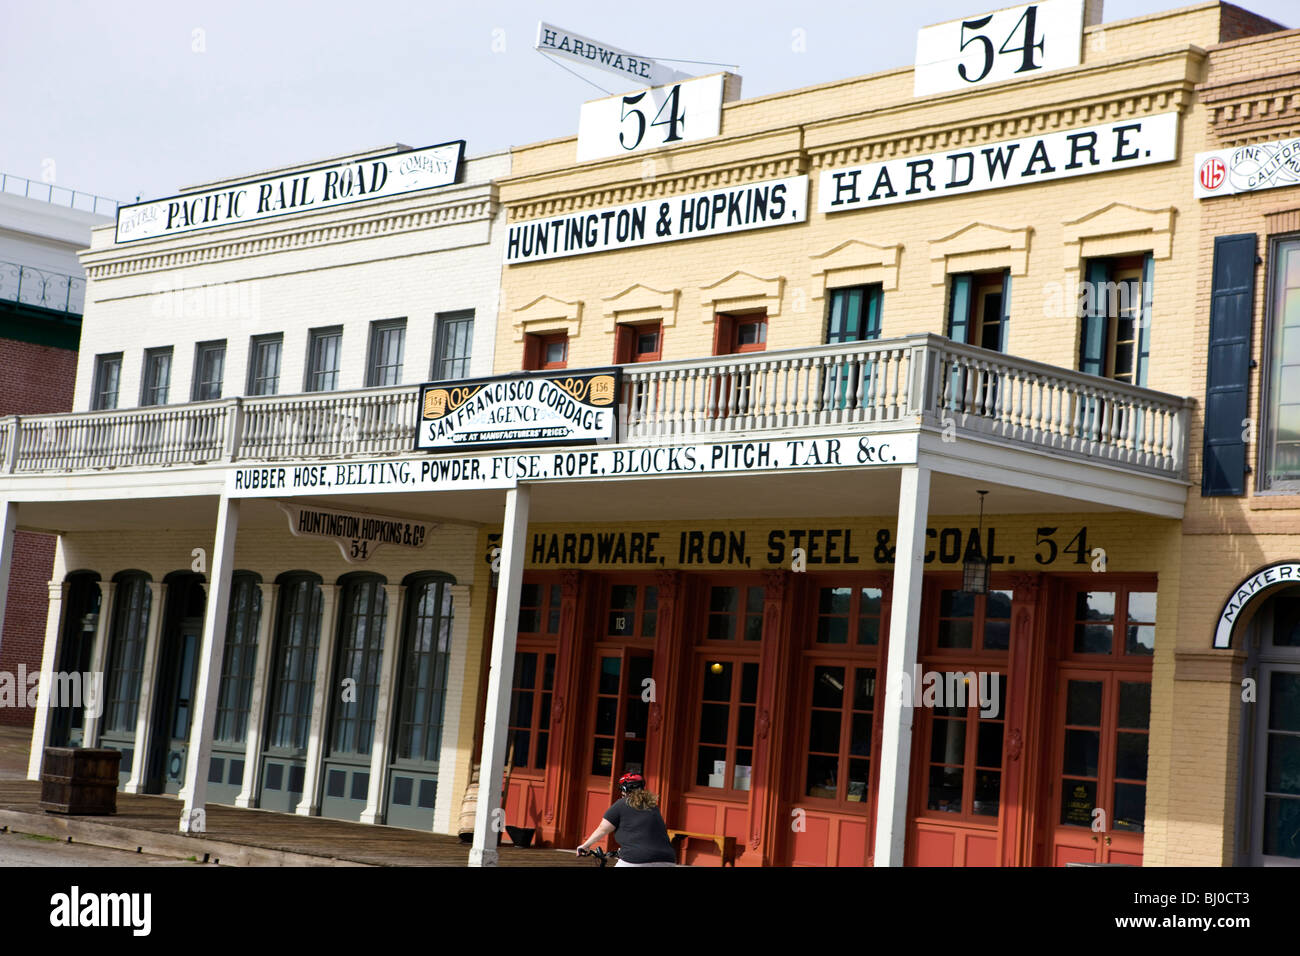 Matériel & Hopkins Huntington et Pacific Rail Road store fronts, Old Sacramento, Californie, États-Unis d'Amérique Banque D'Images